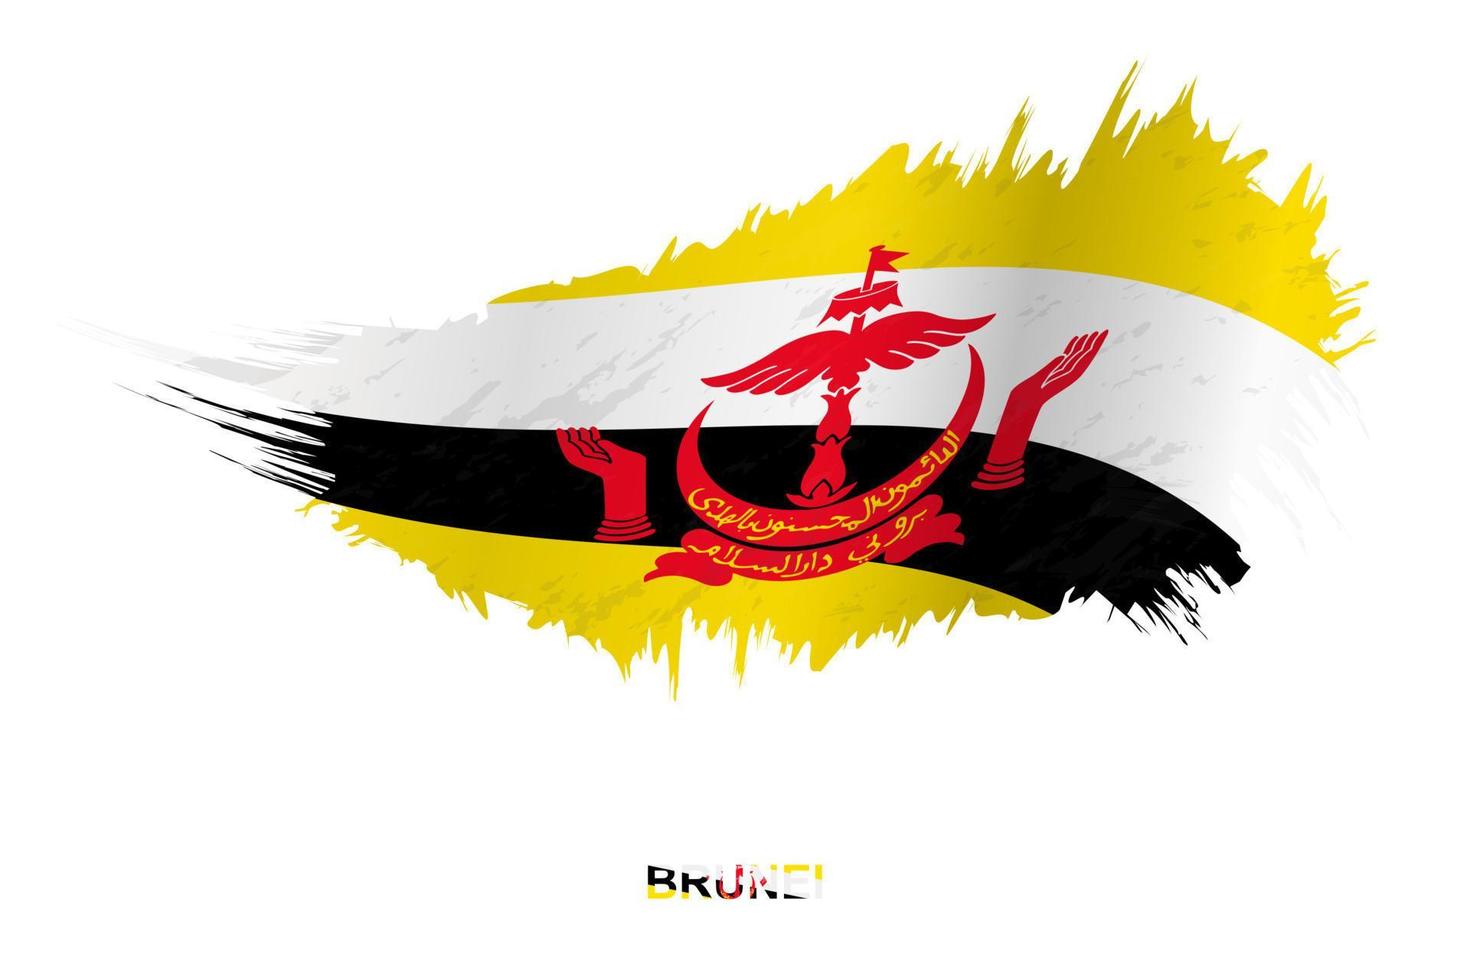 bandeira de brunei em estilo grunge com efeito acenando. vetor